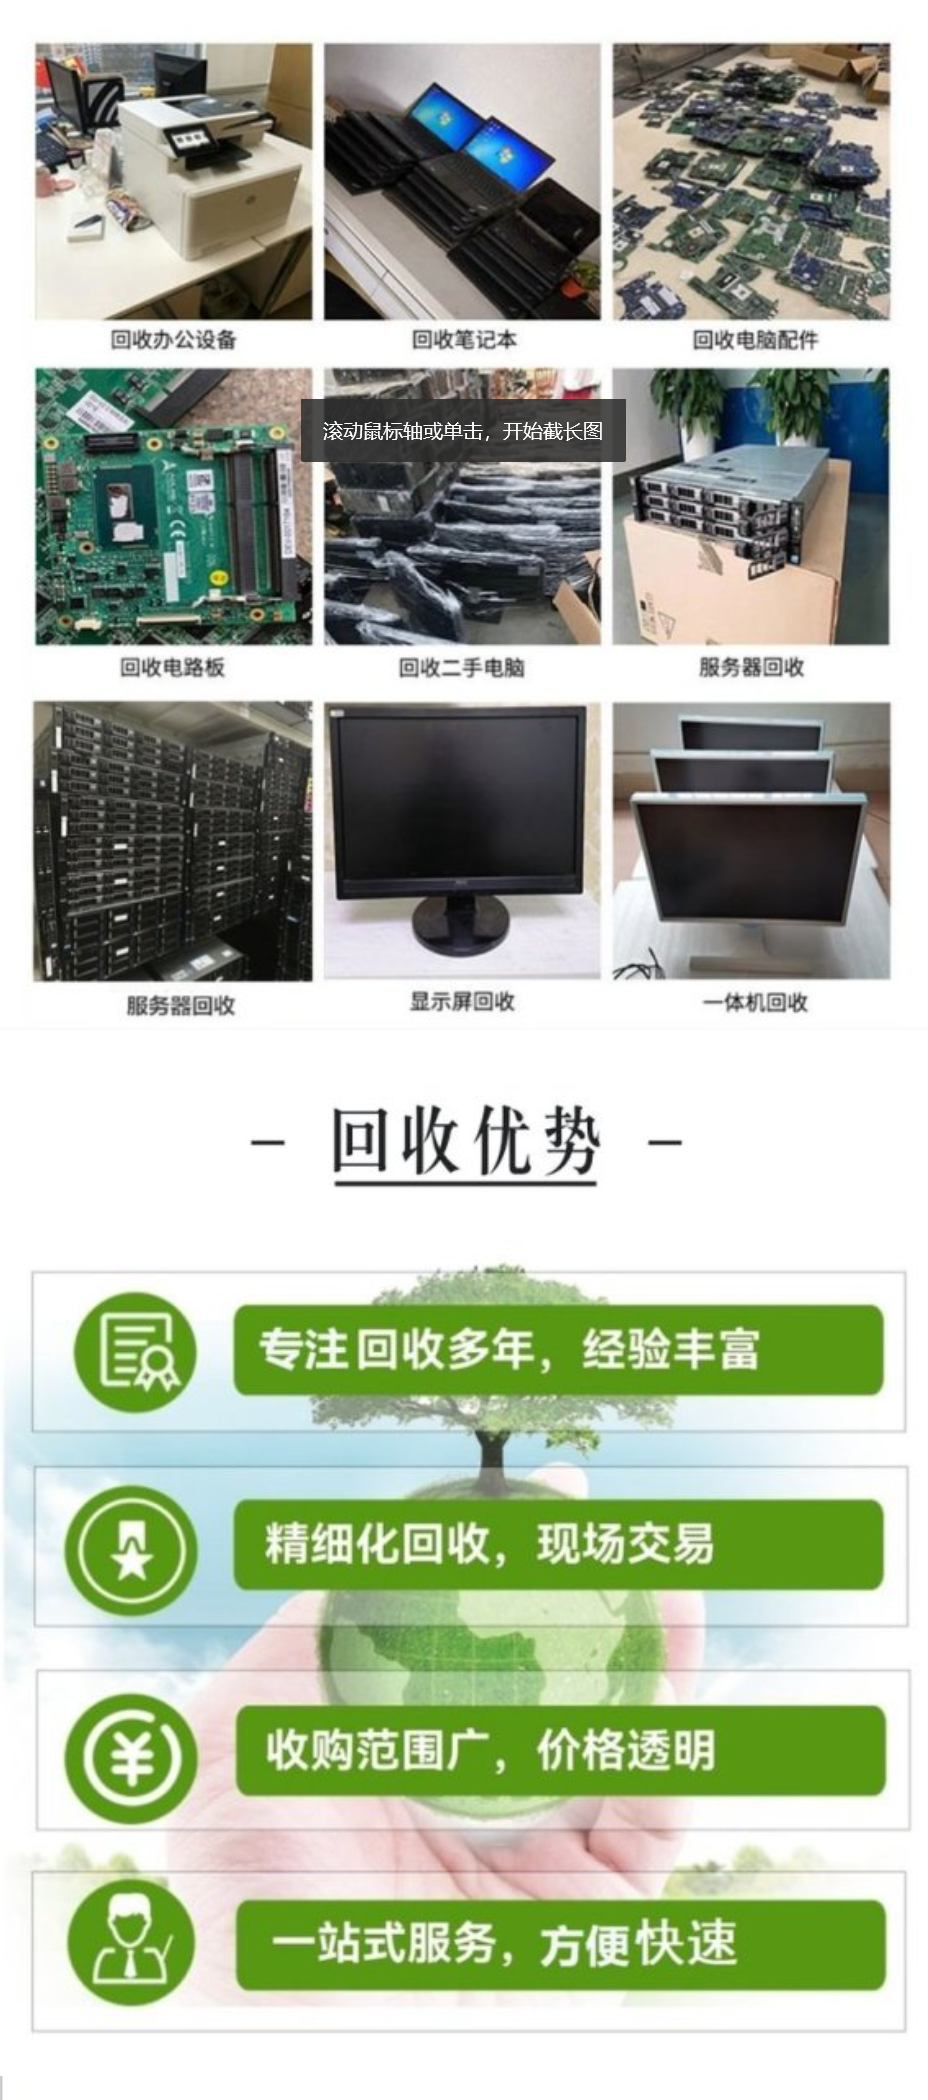 Brand desktop computer recycling door-to-door collection Lenovo ASUS Dell HP desktop computer standard system